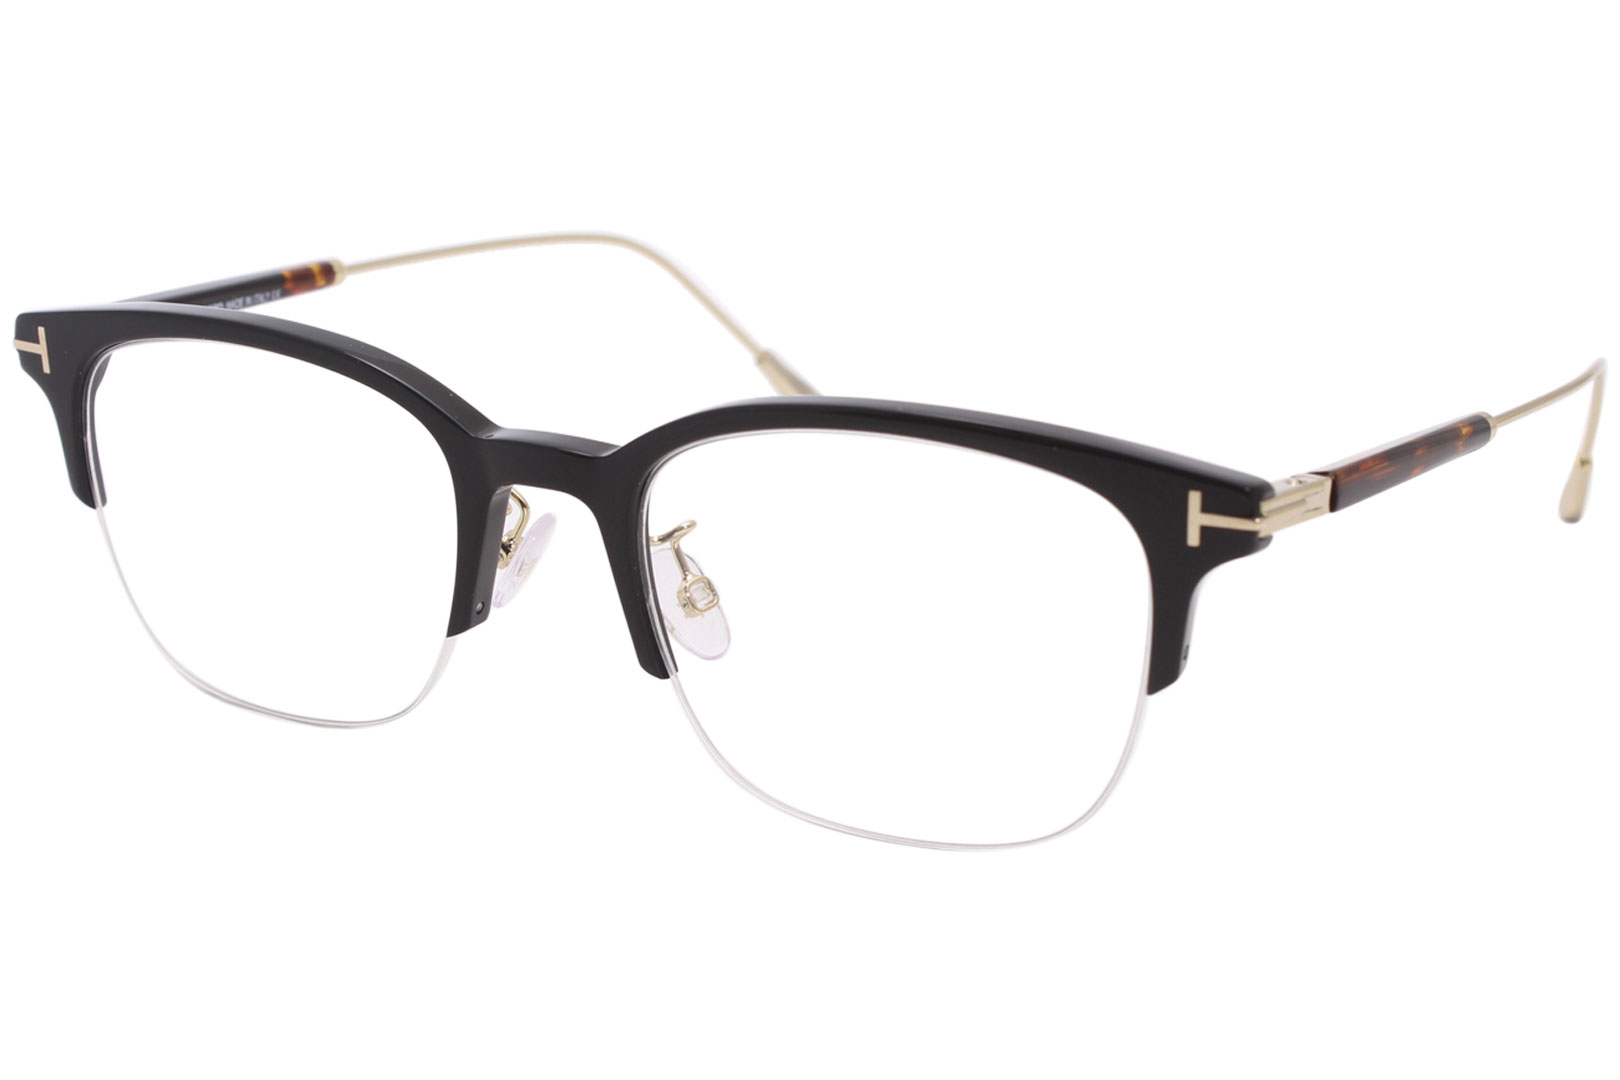 Tom Ford TF5645-D 001 Men's Eyeglasses Black/Gold/Havana Optical Frame 52mm  